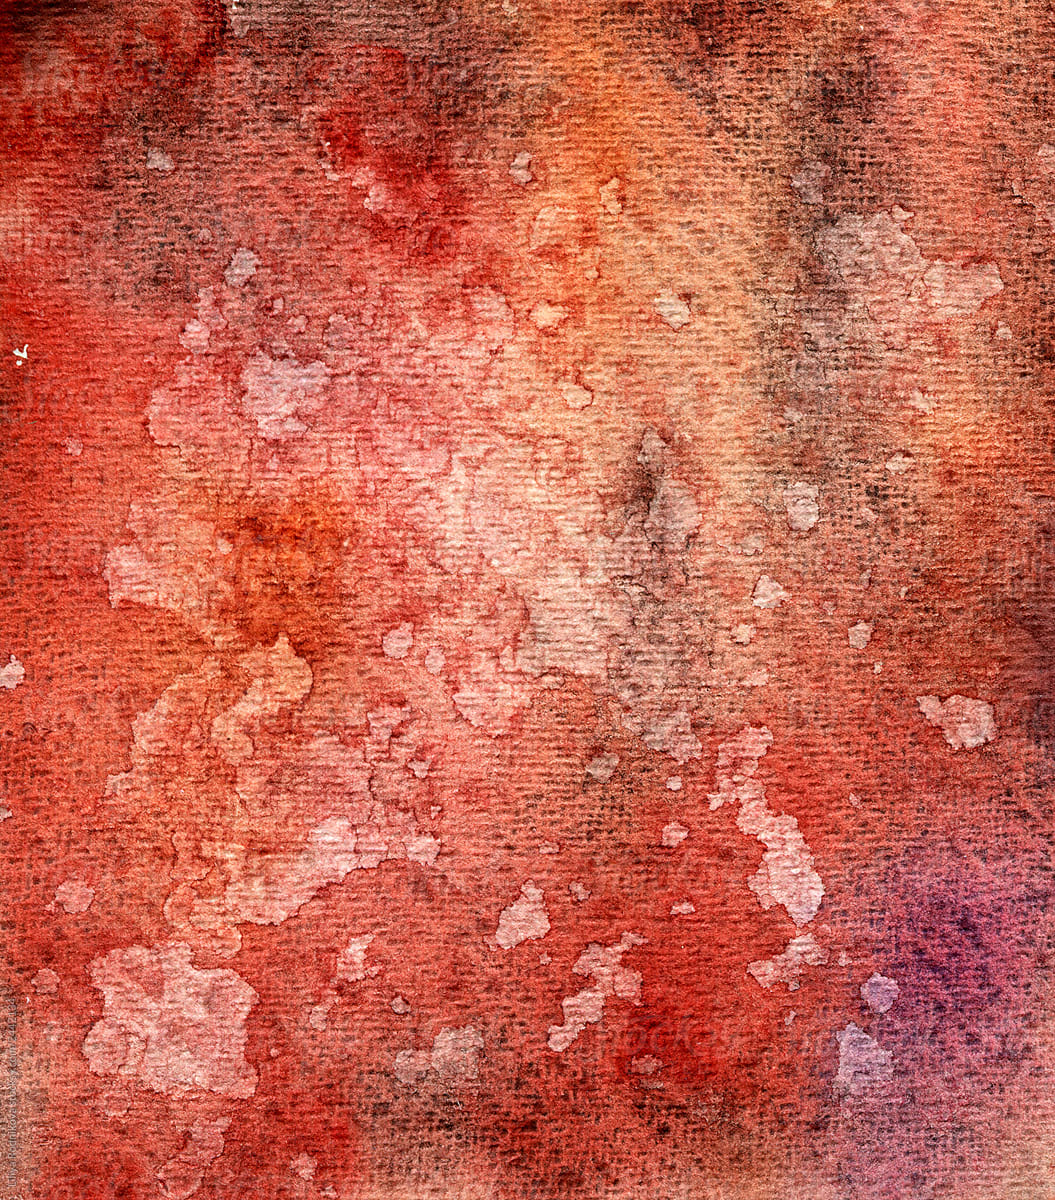 Original watercolor bright textures in deep red color